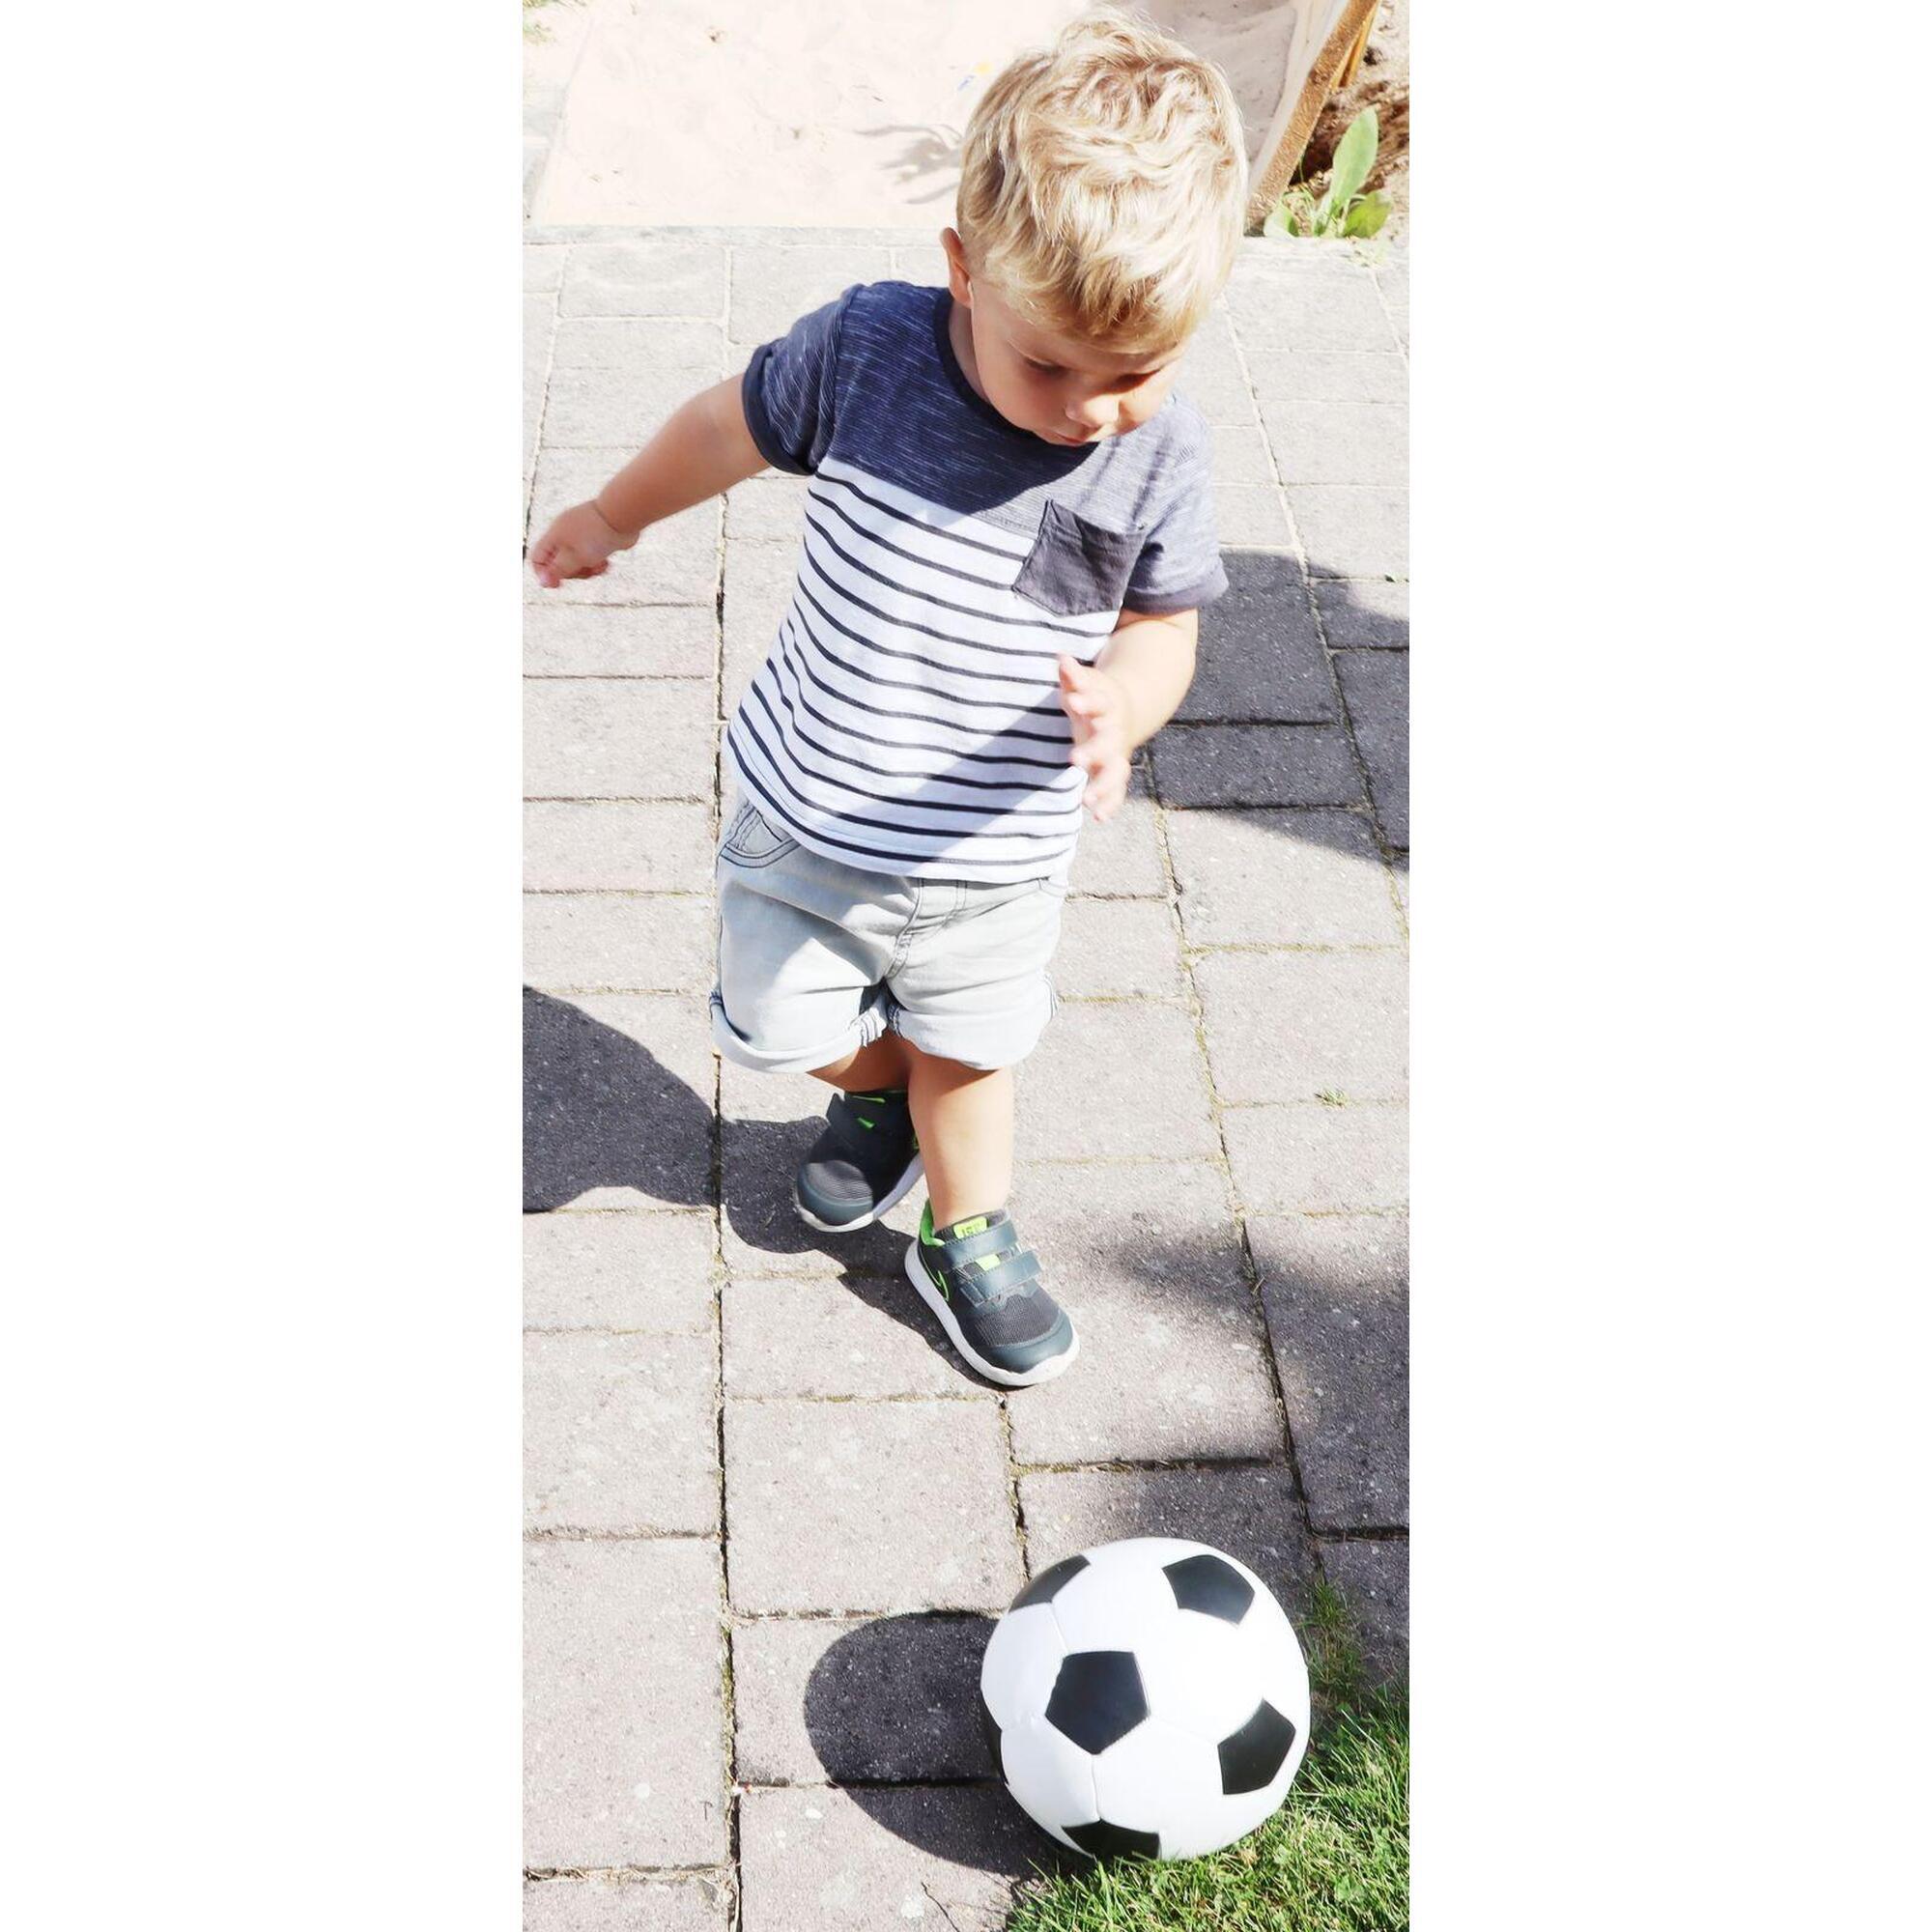 Softball für Kinder, Ø 18 cm, im schwarz-weißen Fußballdesign, extra weich